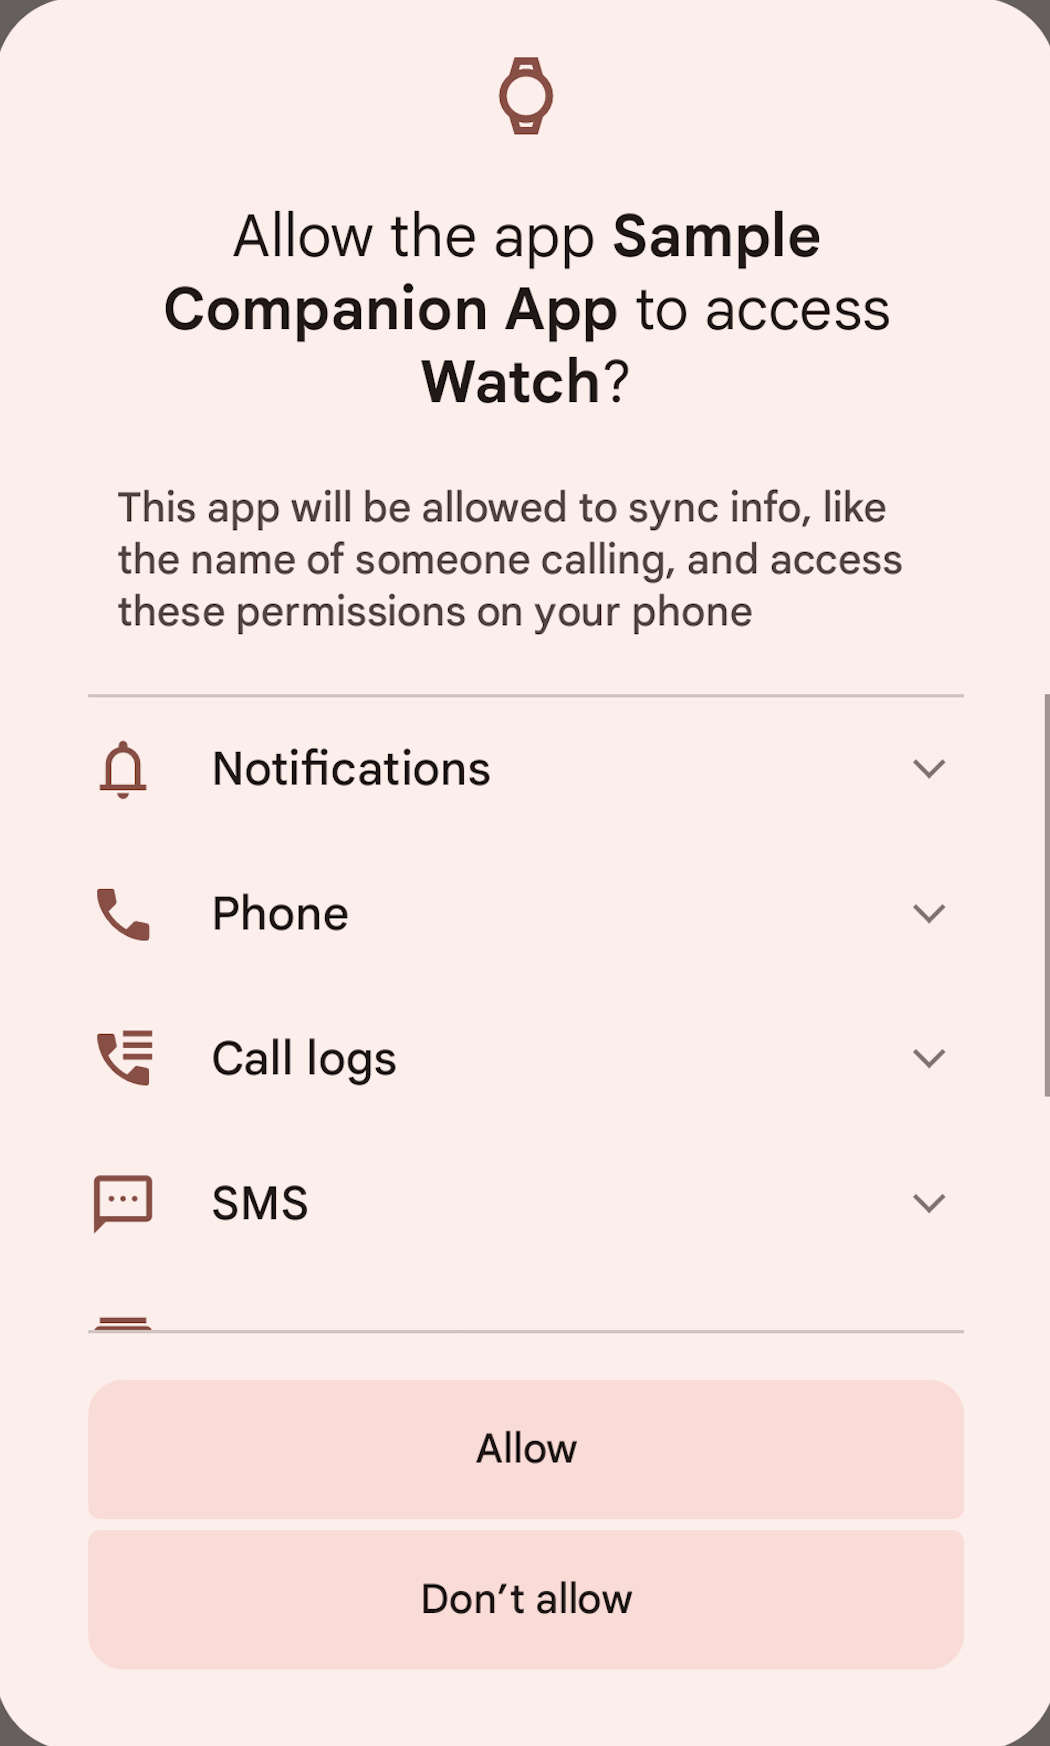 צילום מסך של טלפון המציג הצעה למתן הרשאות